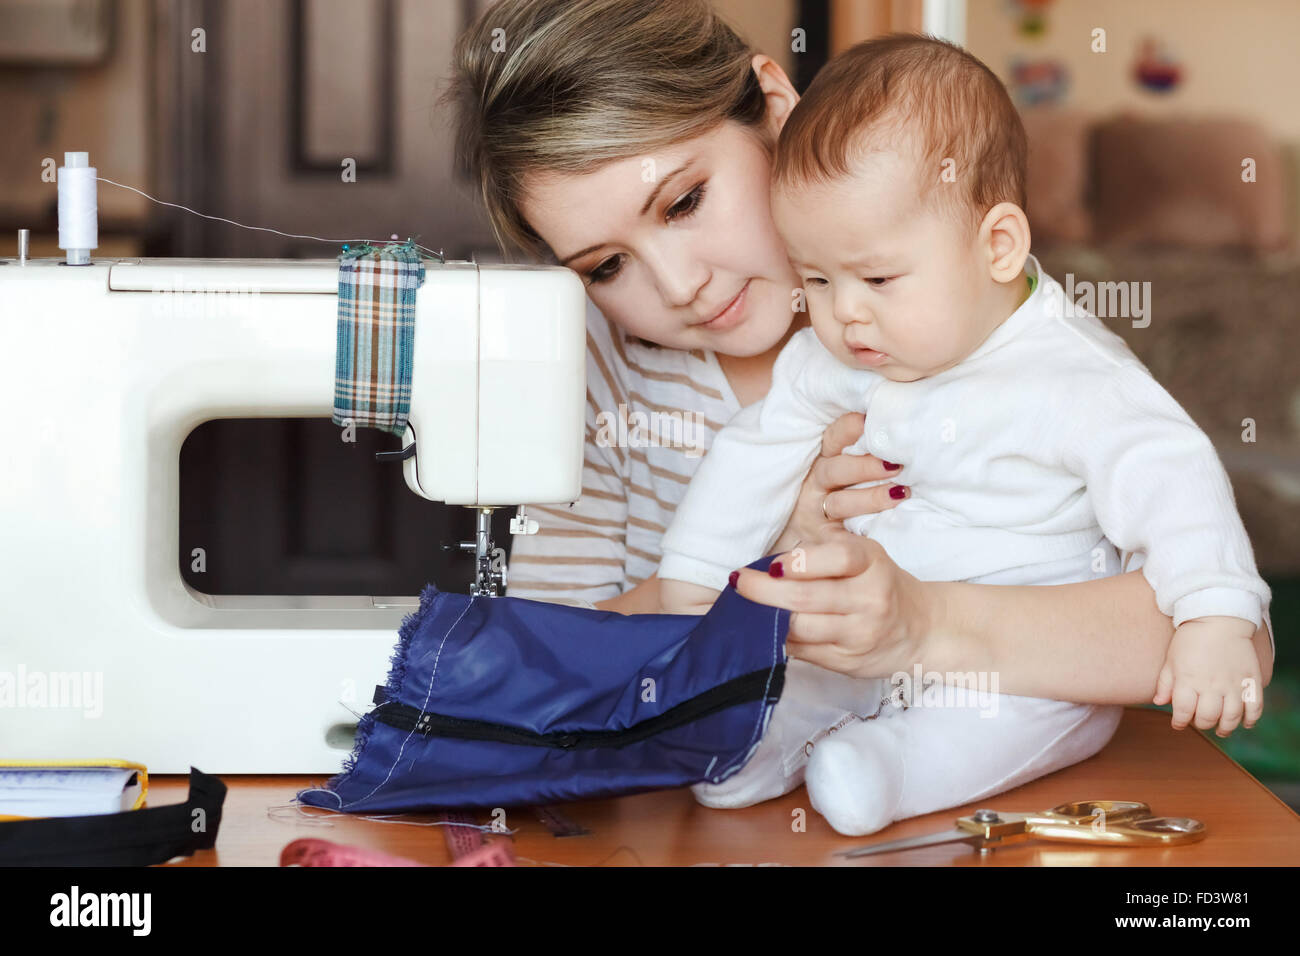 Bambino con sua madre sarta, home, luce naturale, infantili curiosamente cercando di macchina per cucire. Cura dei bambini e il lavoro a casa. Foto Stock